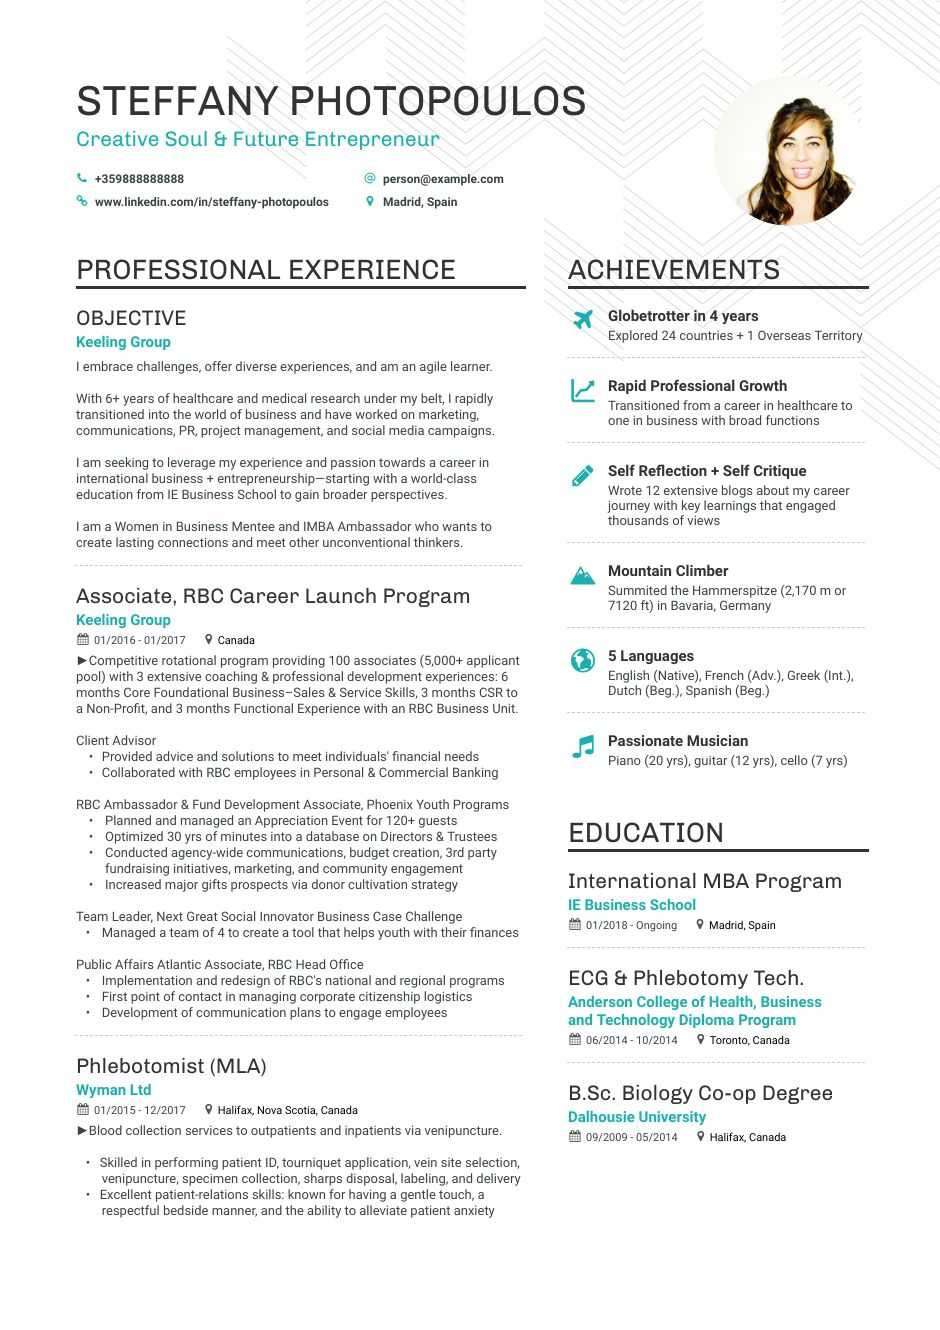 Sample Resume for Career Change From Teaching Career Change Resume Examples, Skills, Templates & More for 2021